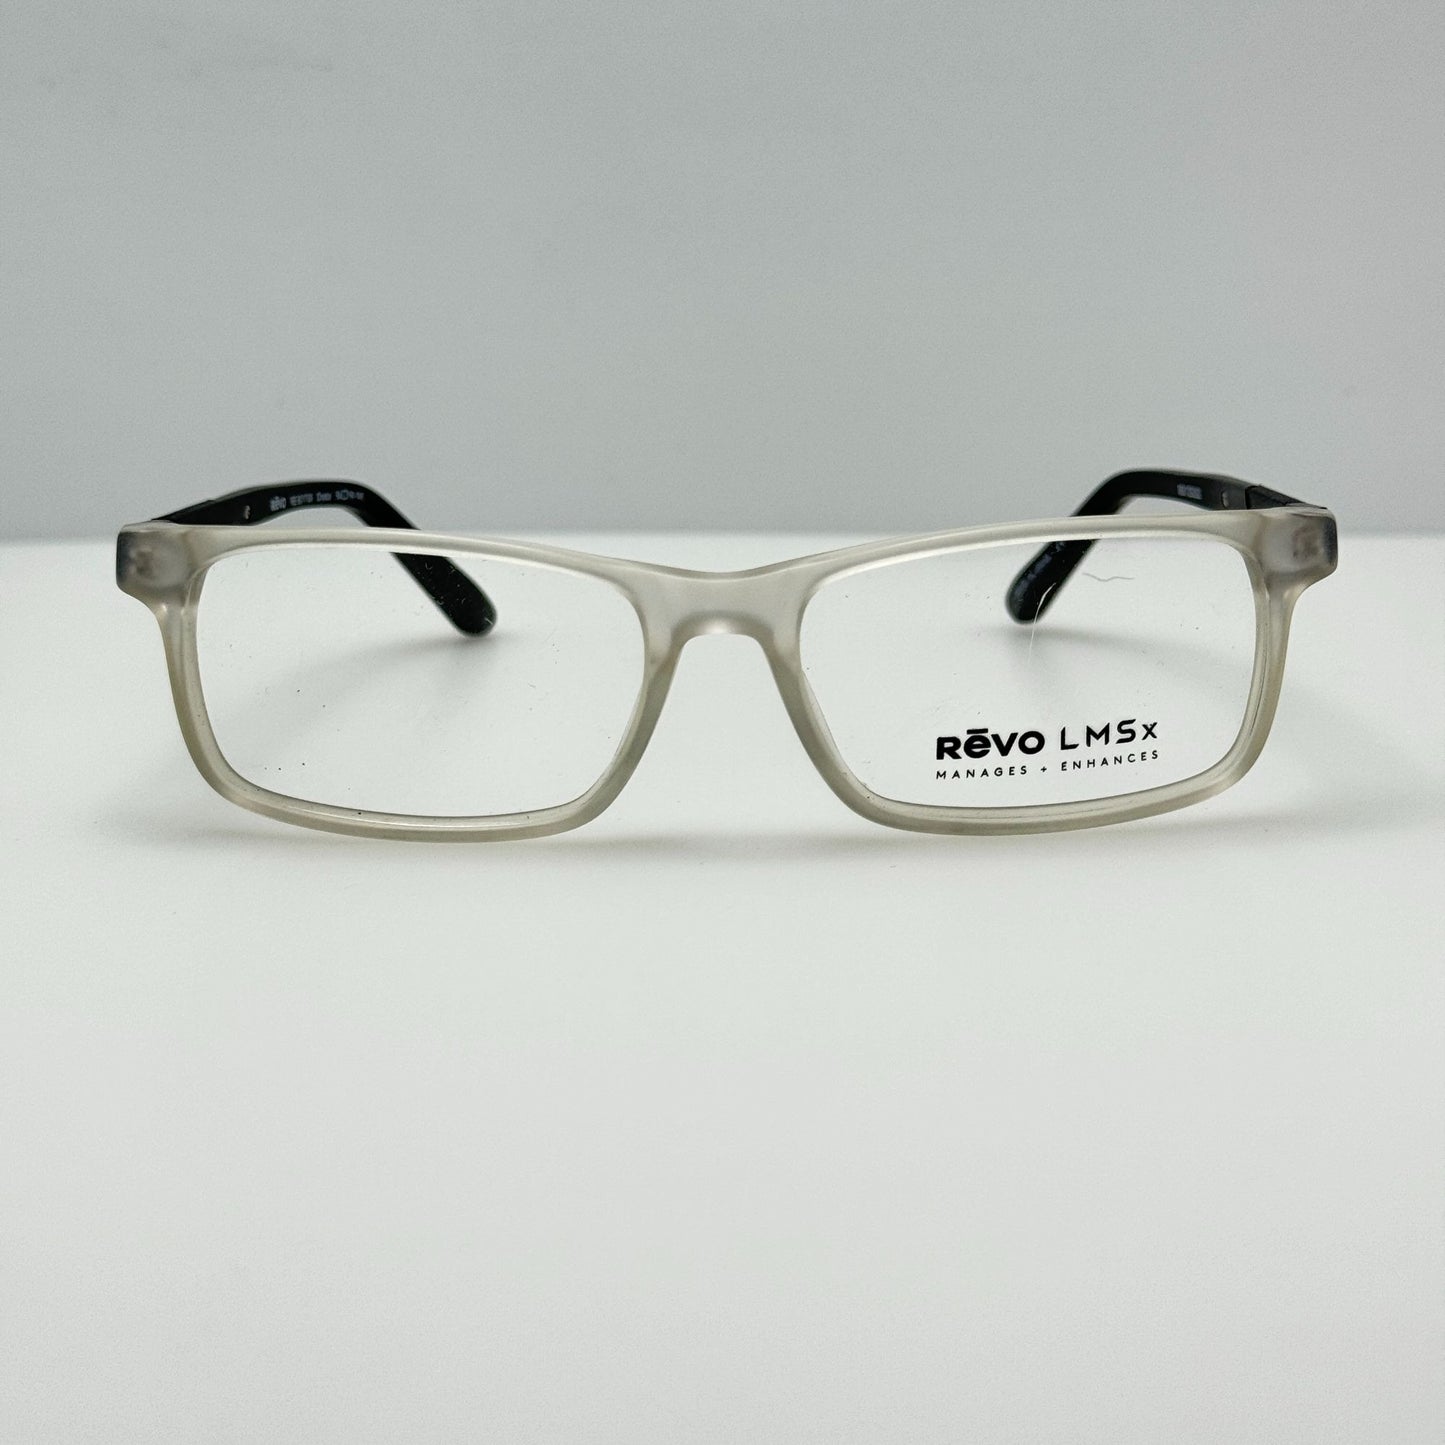 Revo Eye Glasses Eye Glasses Frames RE 8017 09 Crystal 54-16-140